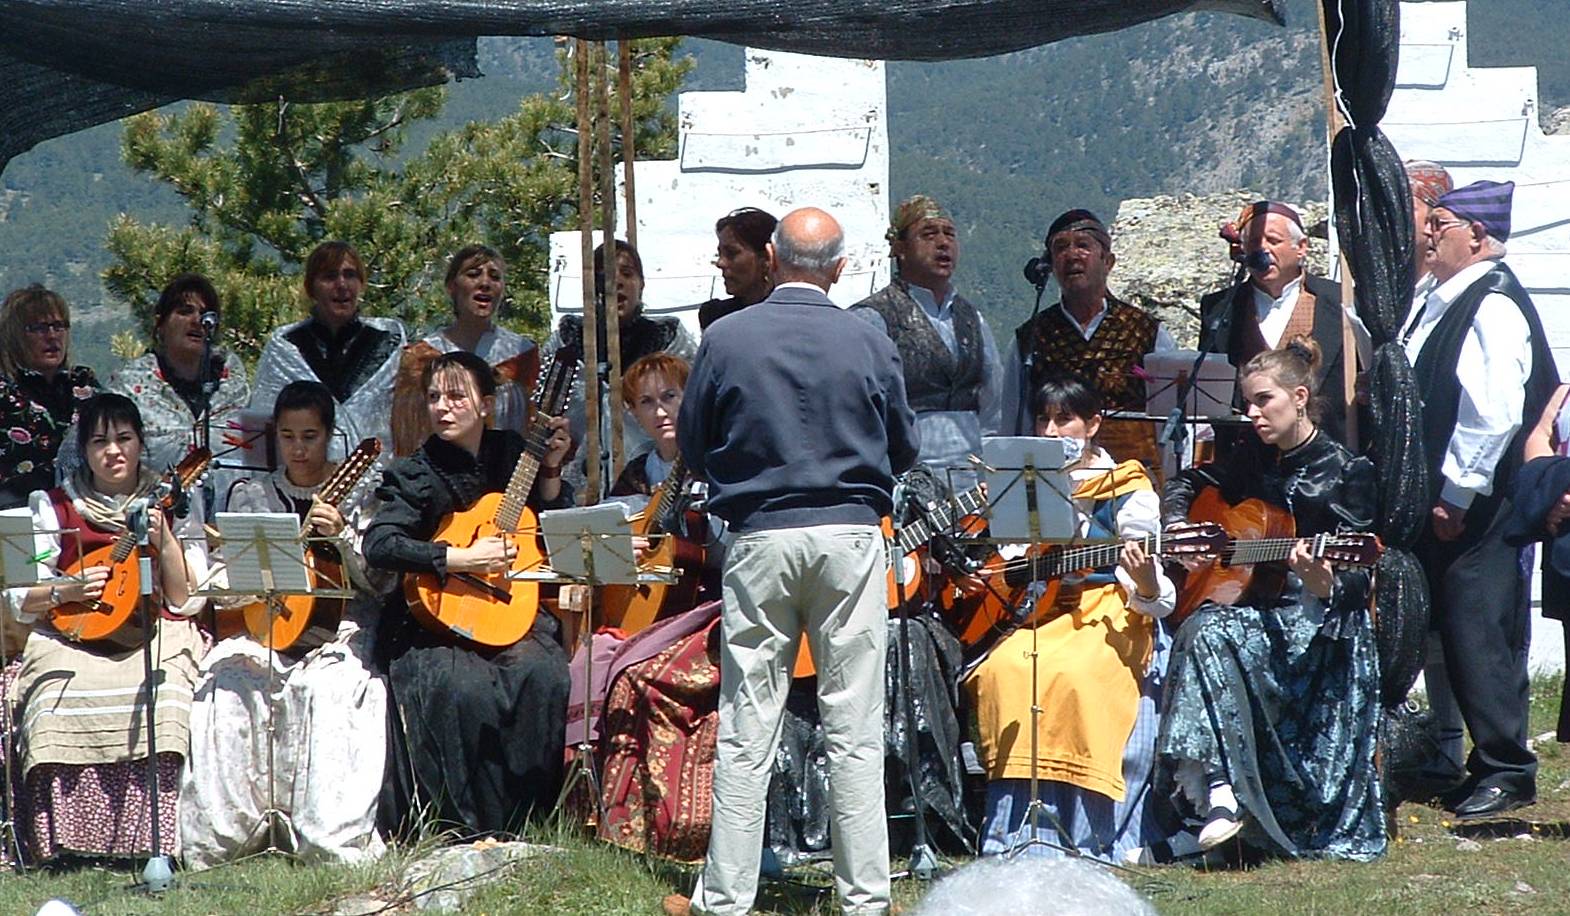 La música aragonesa dando la máxima belleza al evento.